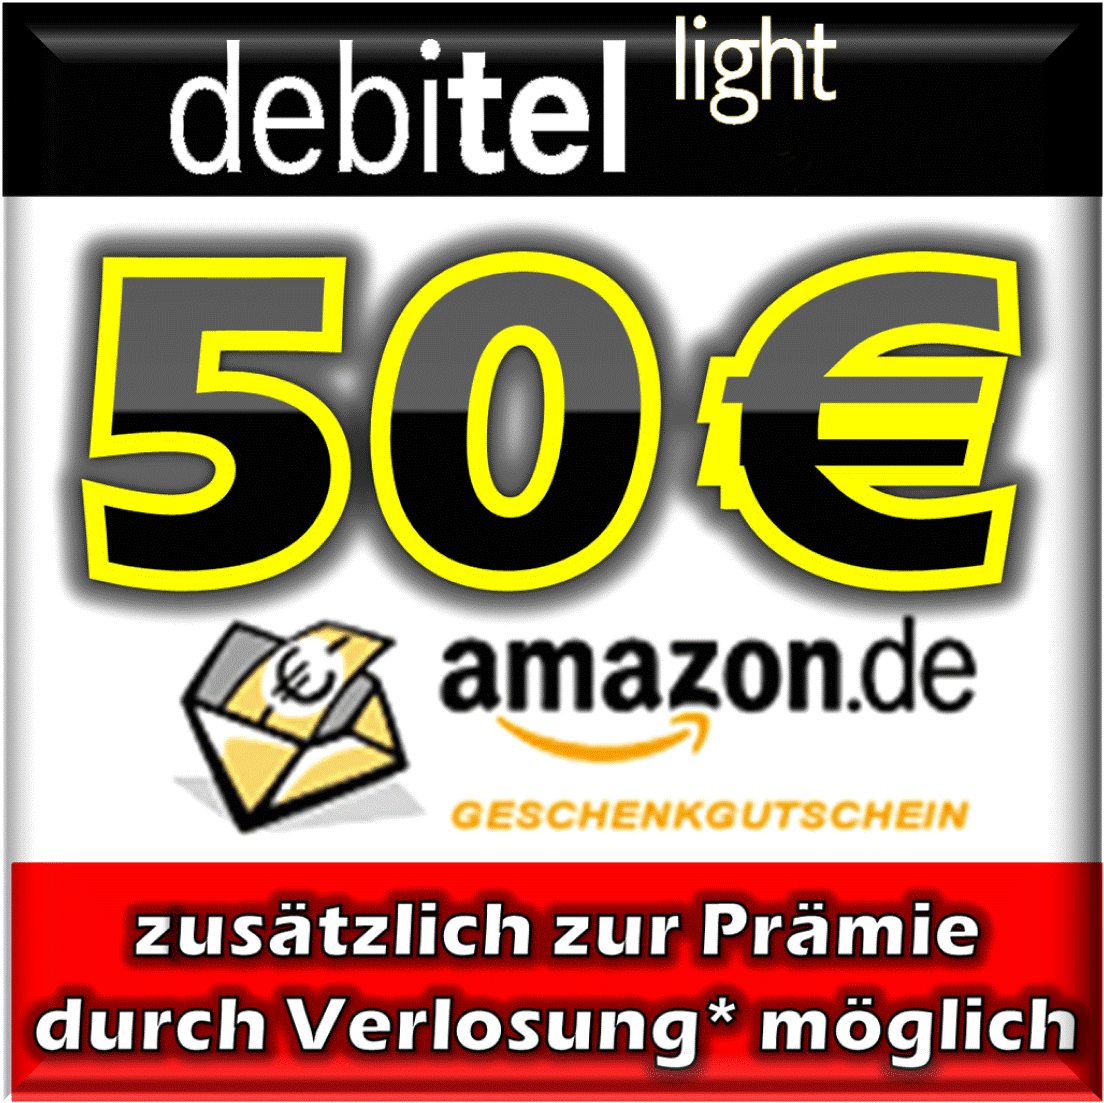 [EBAY] Gewinnspiel! Debitel Light SIM-Karte ohne Schufa und dazu 14,- Euro Amazon Gutschein nur 1,95 Euro! Dazu Chance auf 50,- Euro Amazon Gutschein!